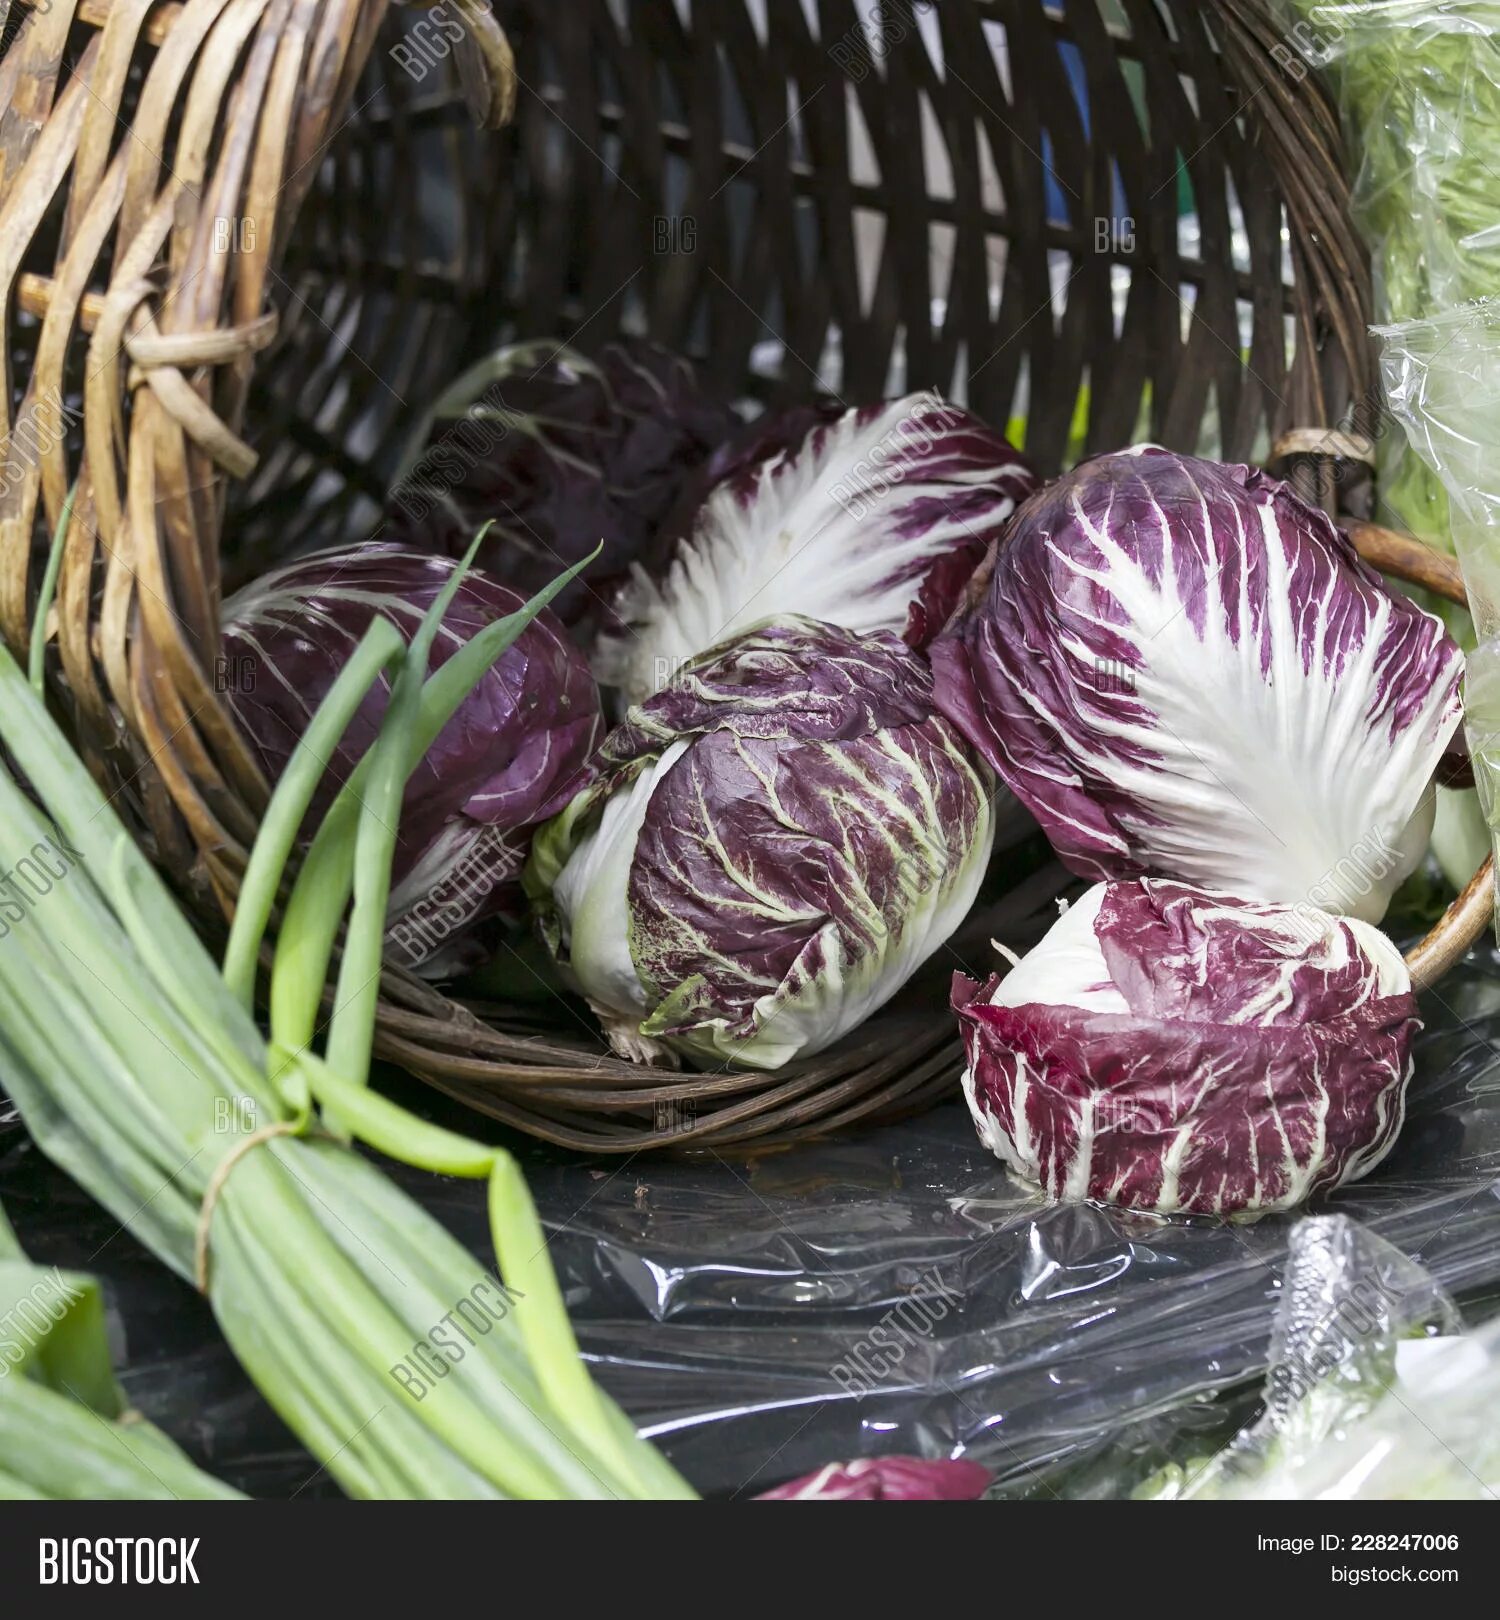 Радичио салат фото как выглядит. изображения и Bigstock.